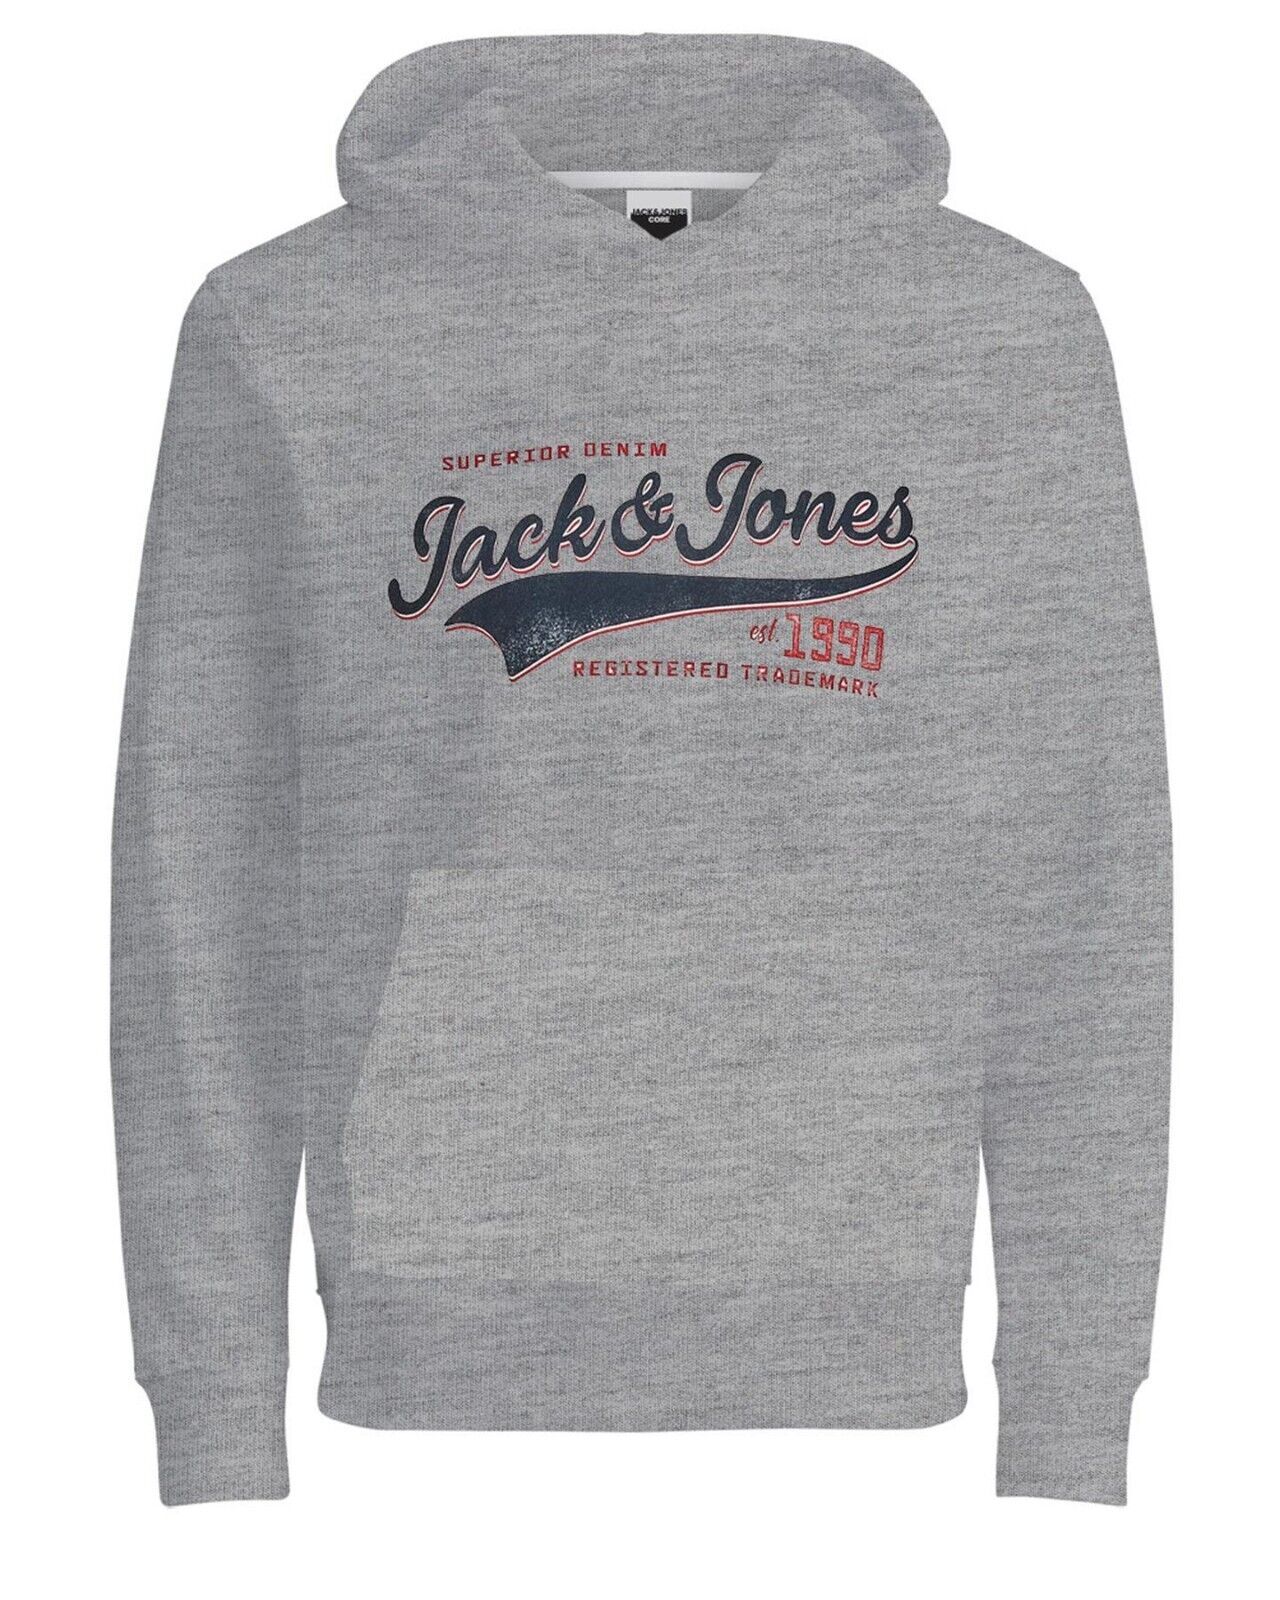 Jack & Jones Kids Boys Pullover Hoodie Logo Printed Warm Winter Hooded Sweat Top